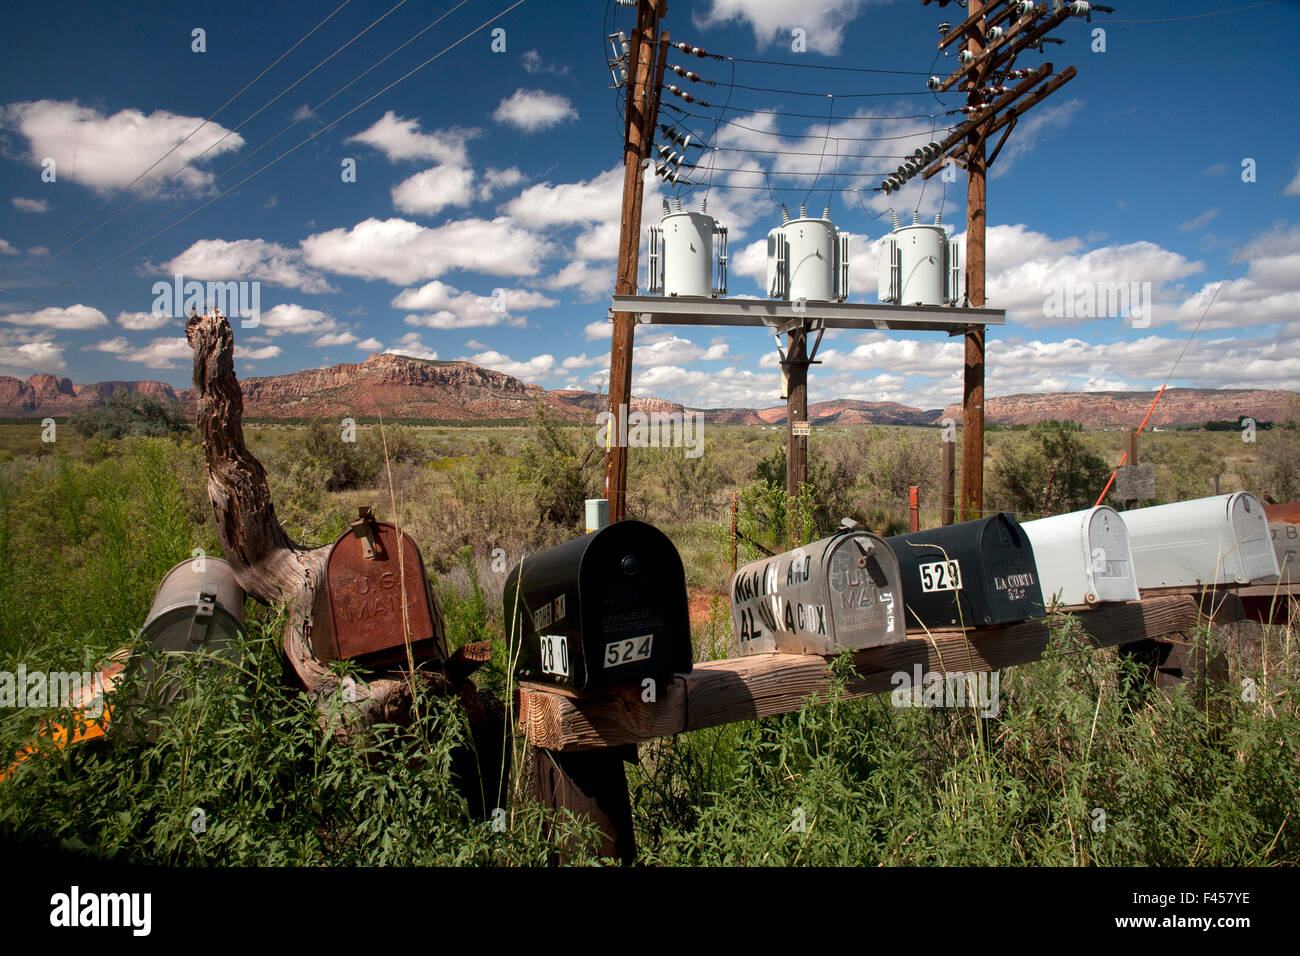 Eine Reihe von nummerierten Postfächer ist mit elektrischen Transformatoren auf einem ländlichen Lane in Cane Betten, AZ. Hinweis Butte im Hintergrund gegenübergestellt. Stockfoto